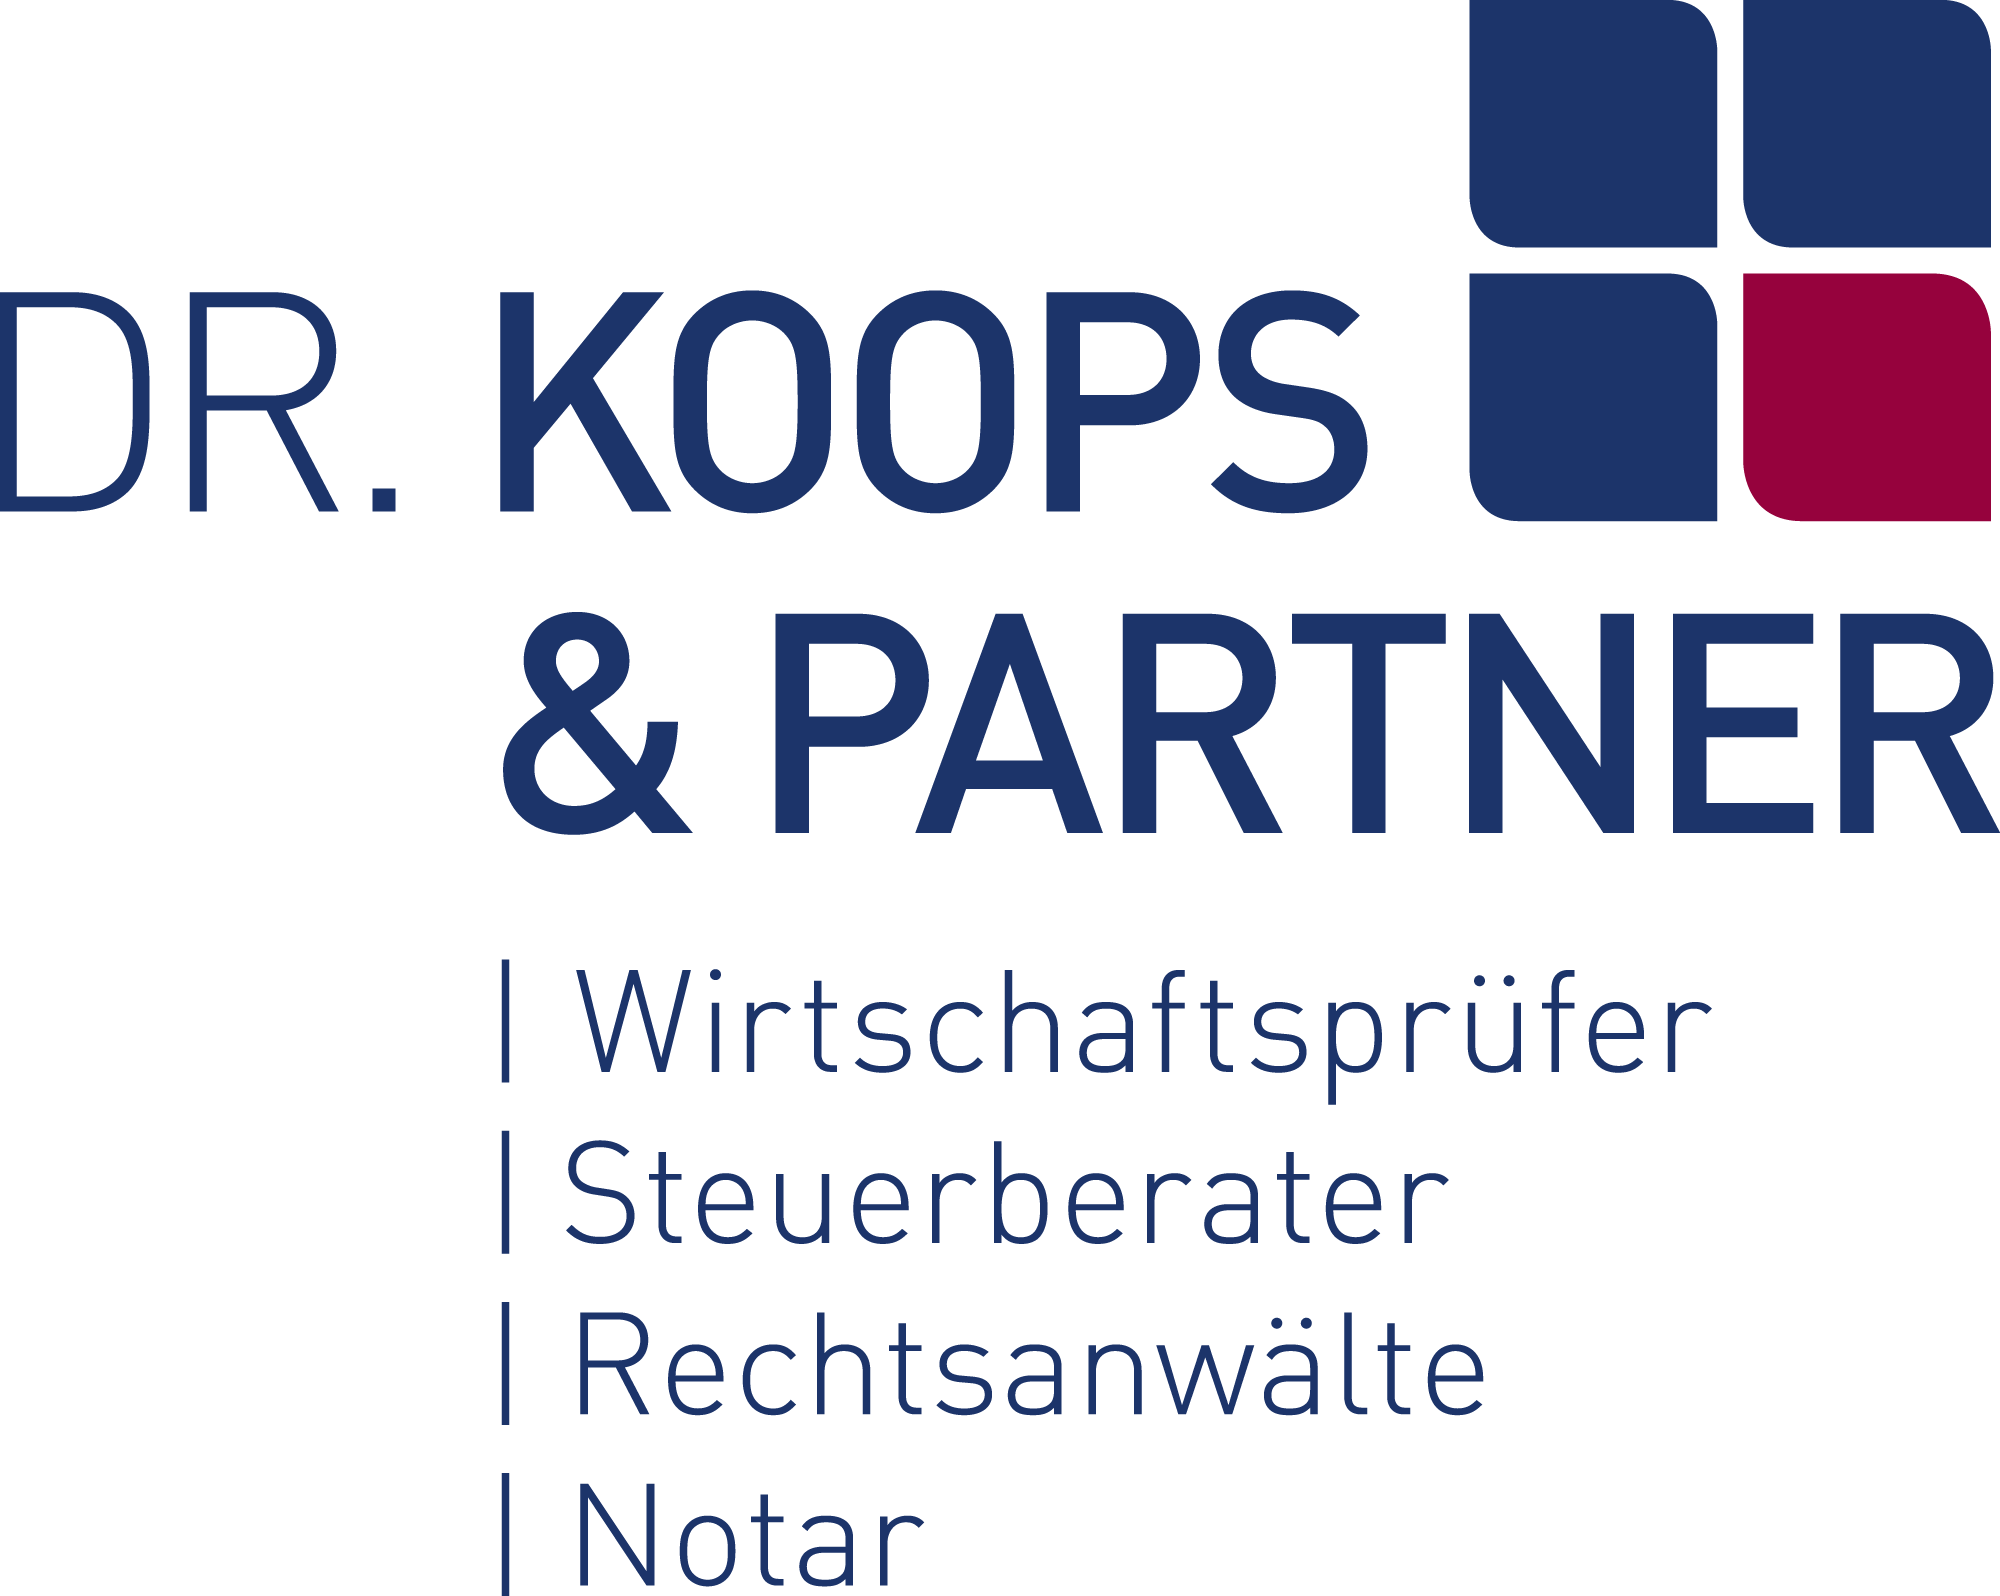 Dr. Koops & Partner